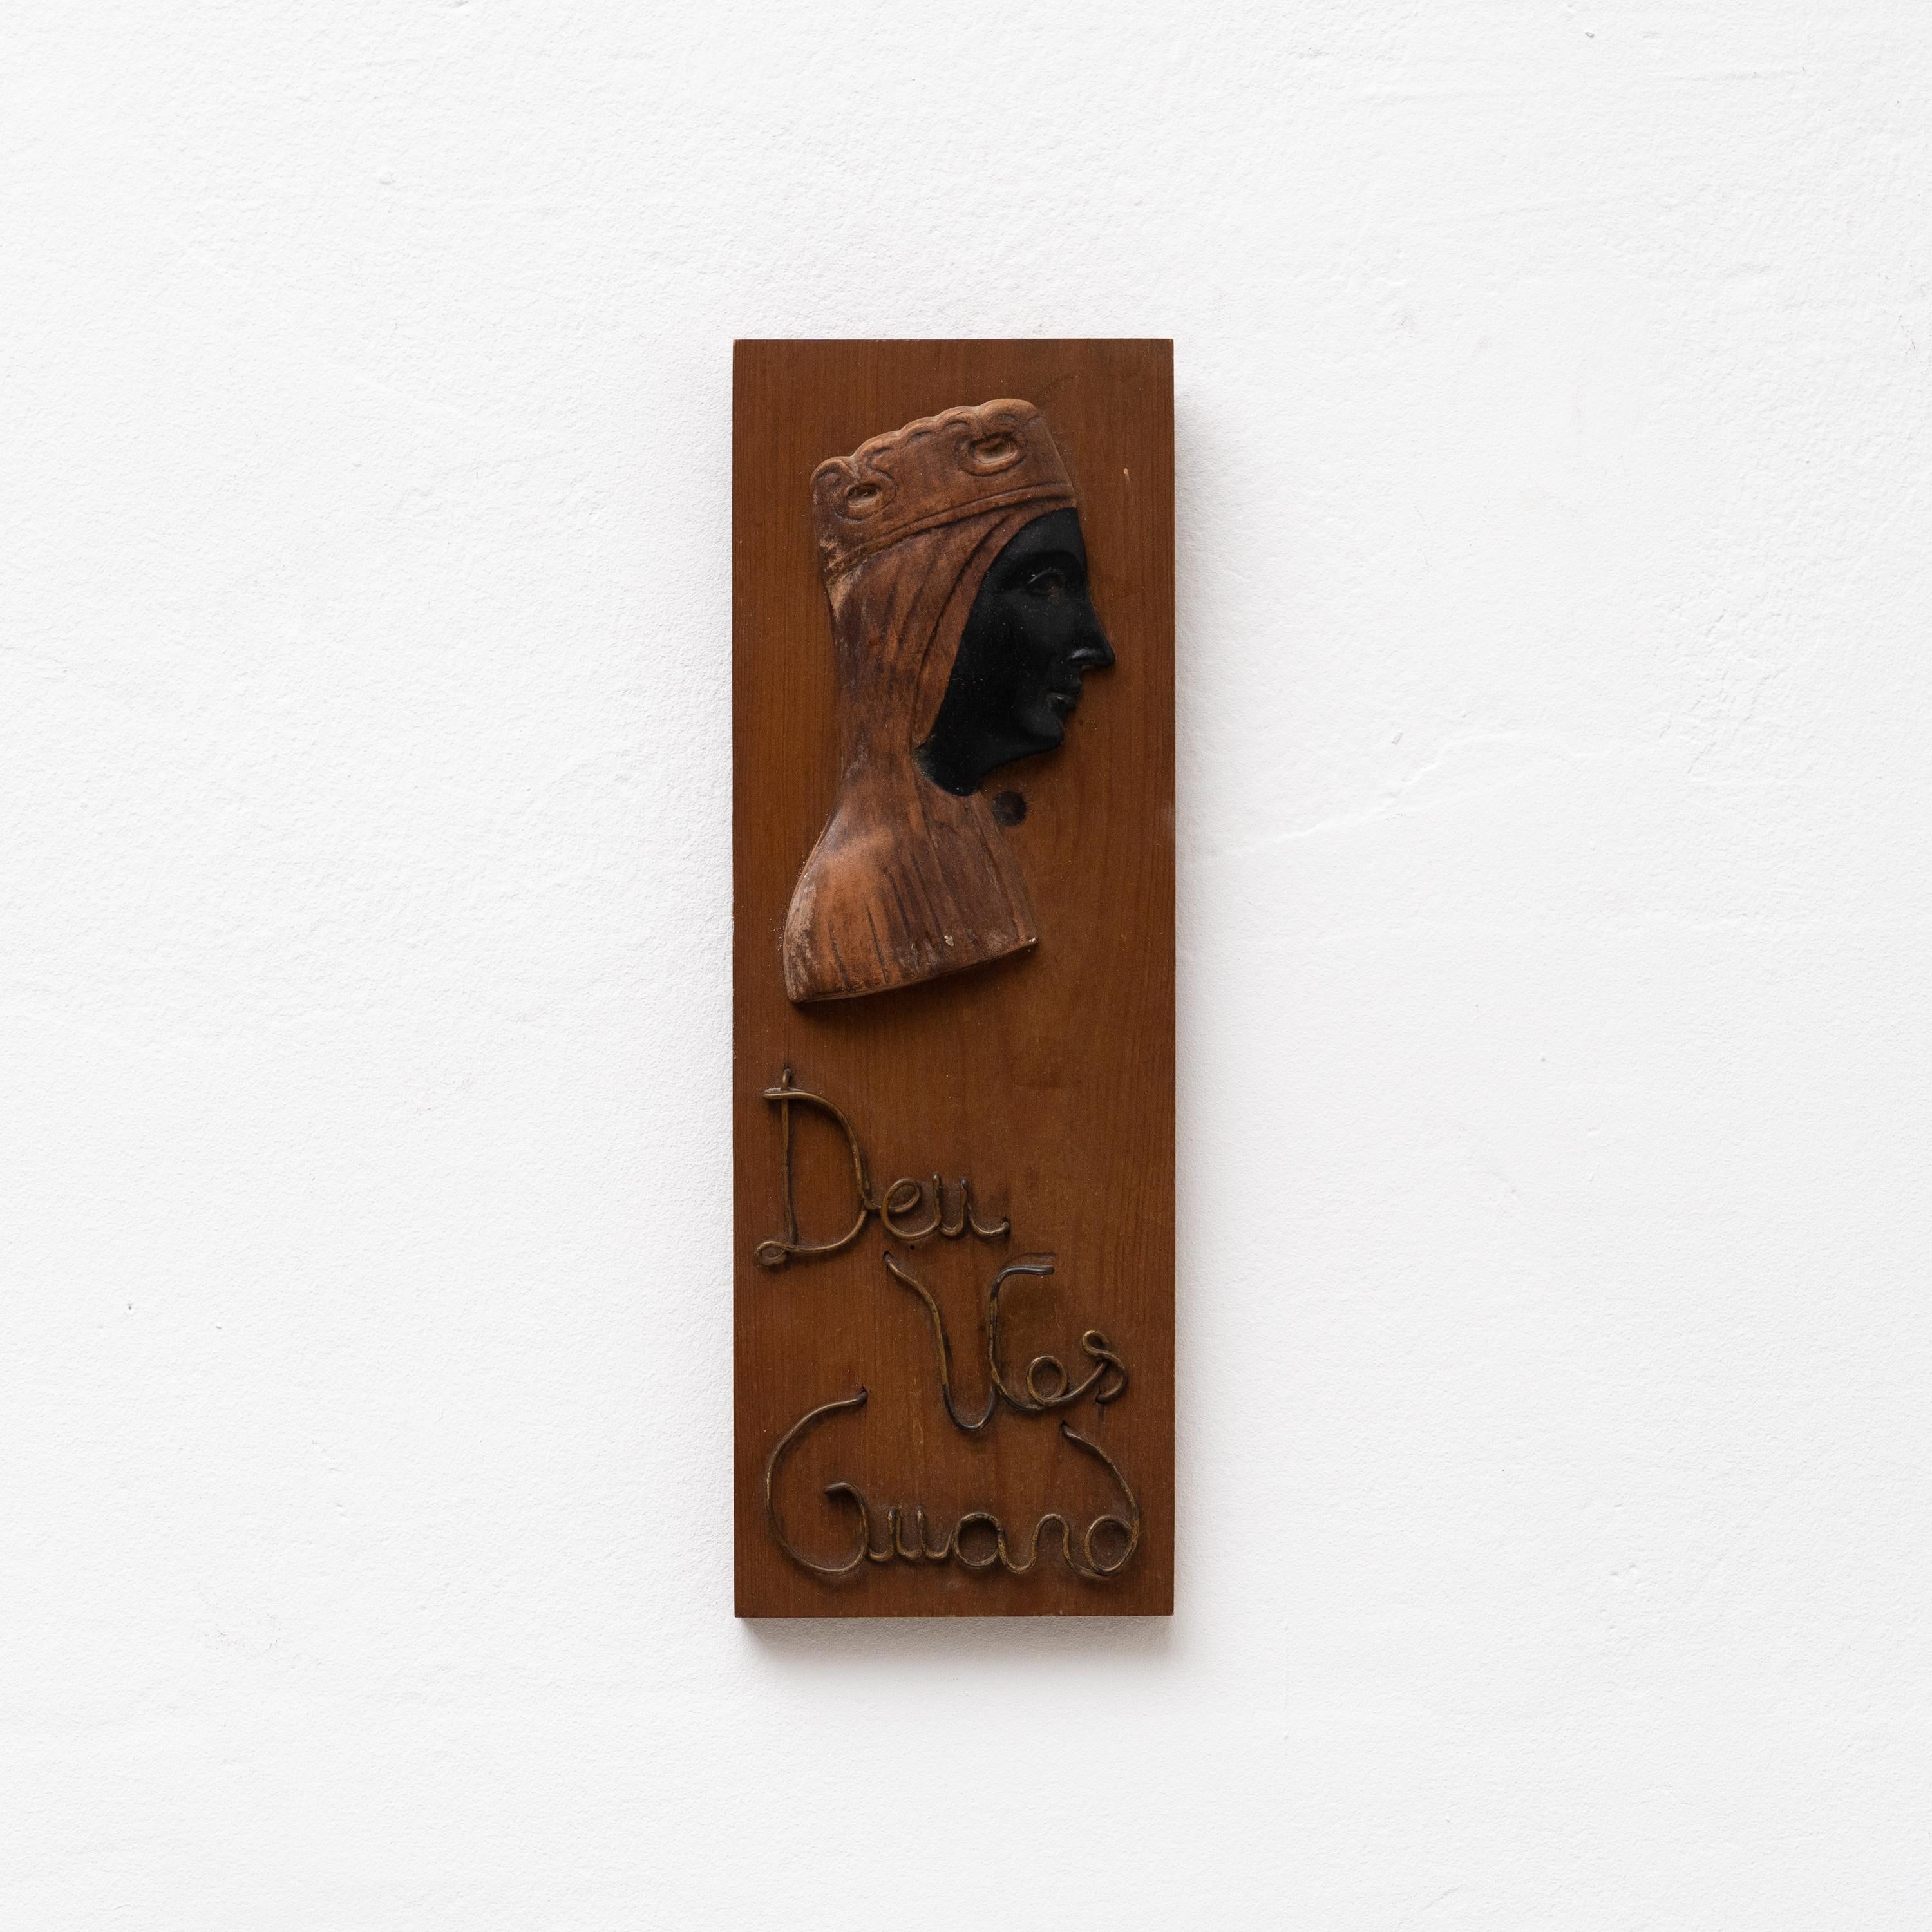 Traditionelles Holzkunstwerk Wand Katalanisch Religiöse Jungfrau La Moreneta.

Handgefertigt in Katalonien, 1990.

Originaler Zustand mit geringen alters- und gebrauchsbedingten Abnutzungserscheinungen, der eine schöne Patina